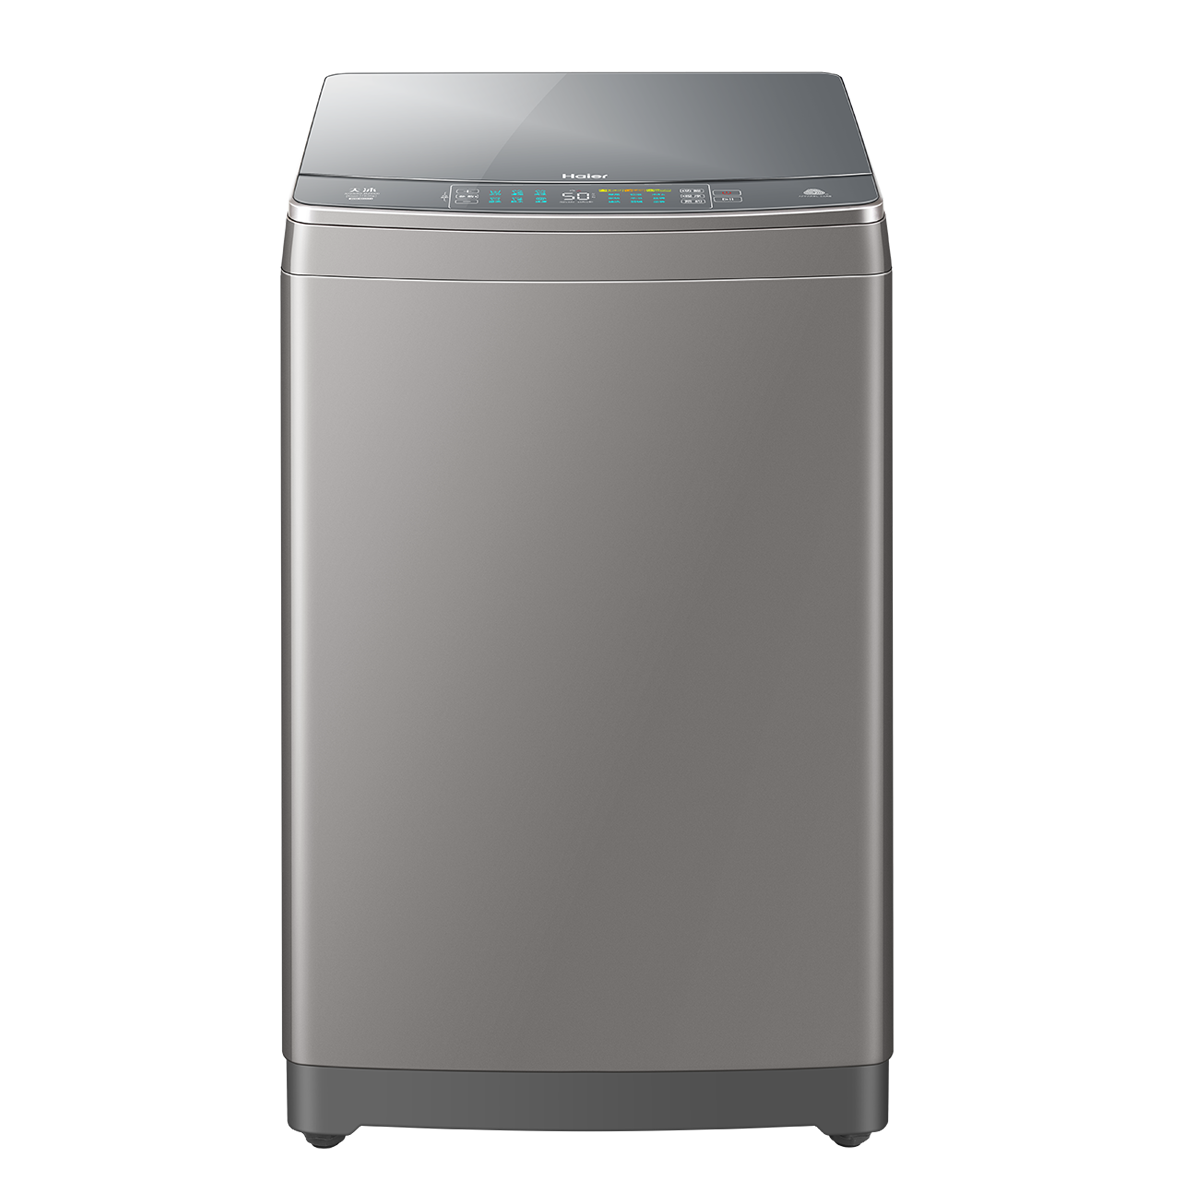 海尔Haier洗衣机 XQS80-BZ866 说明书